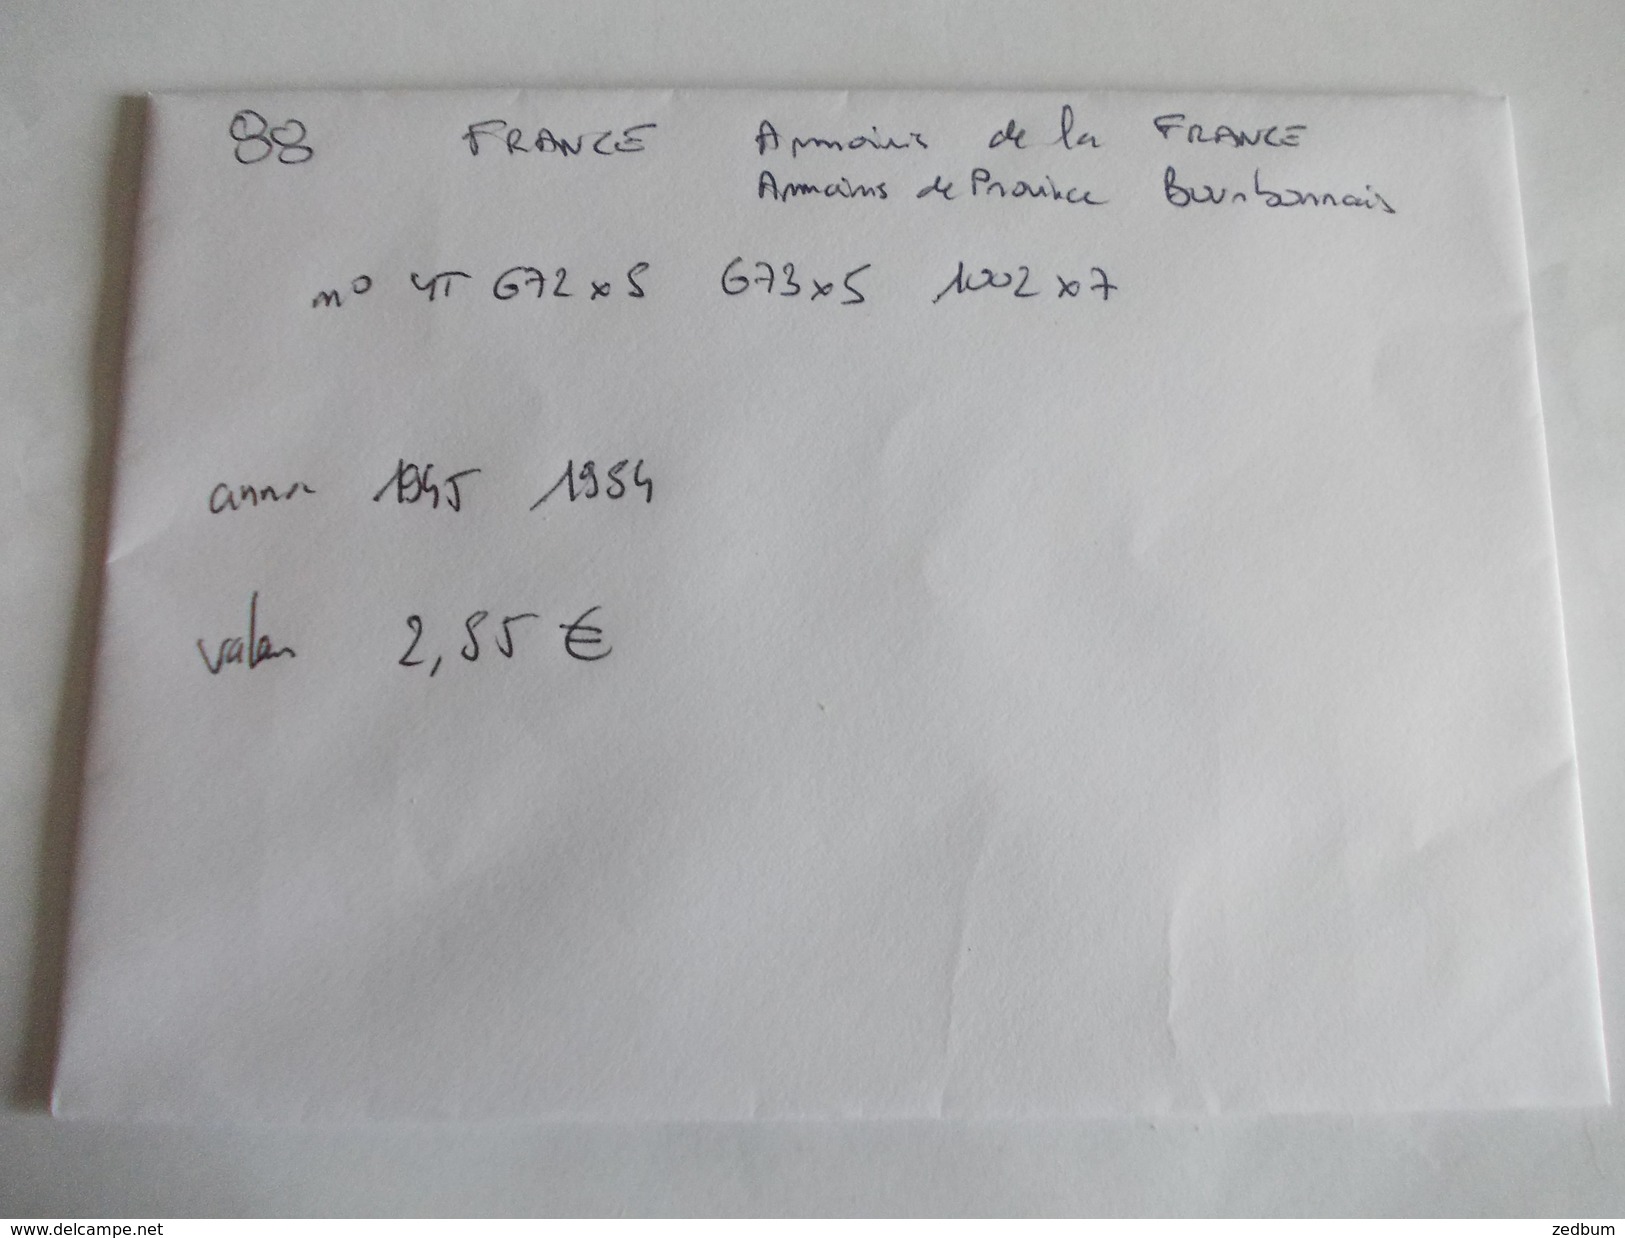 TIMBRE France Armoiries de provinces Bourbonnais et de la France 672 673 1002 valeur mini 2.55 &euro;